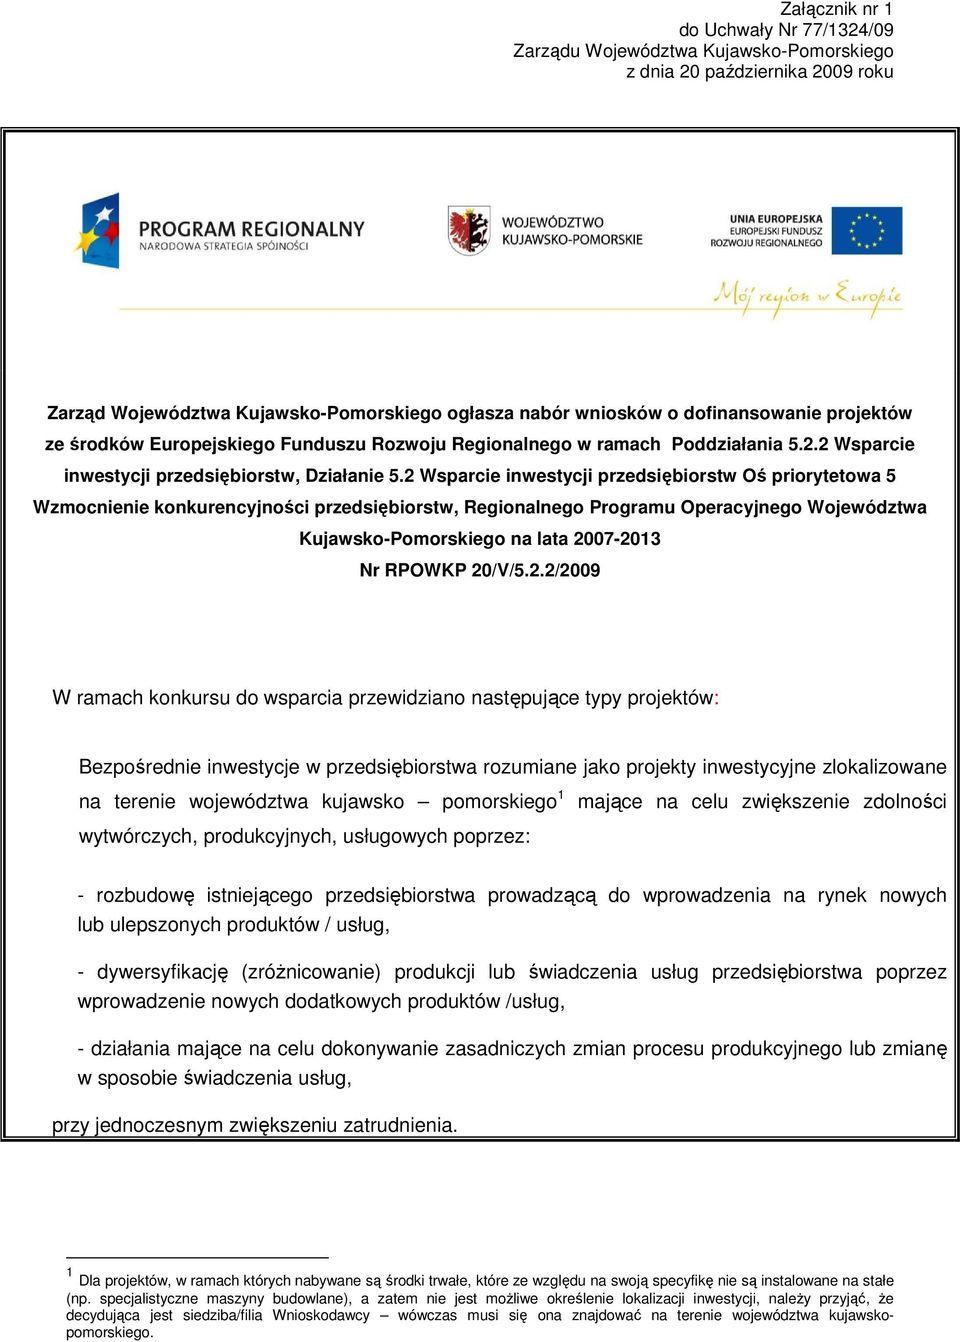 2 Wsparcie inwestycji przedsiębiorstw Oś priorytetowa 5 Wzmocnienie konkurencyjności przedsiębiorstw, Regionalnego Programu Operacyjnego Województwa Kujawsko-Pomorskiego na lata 2007-2013 Nr RPOWKP